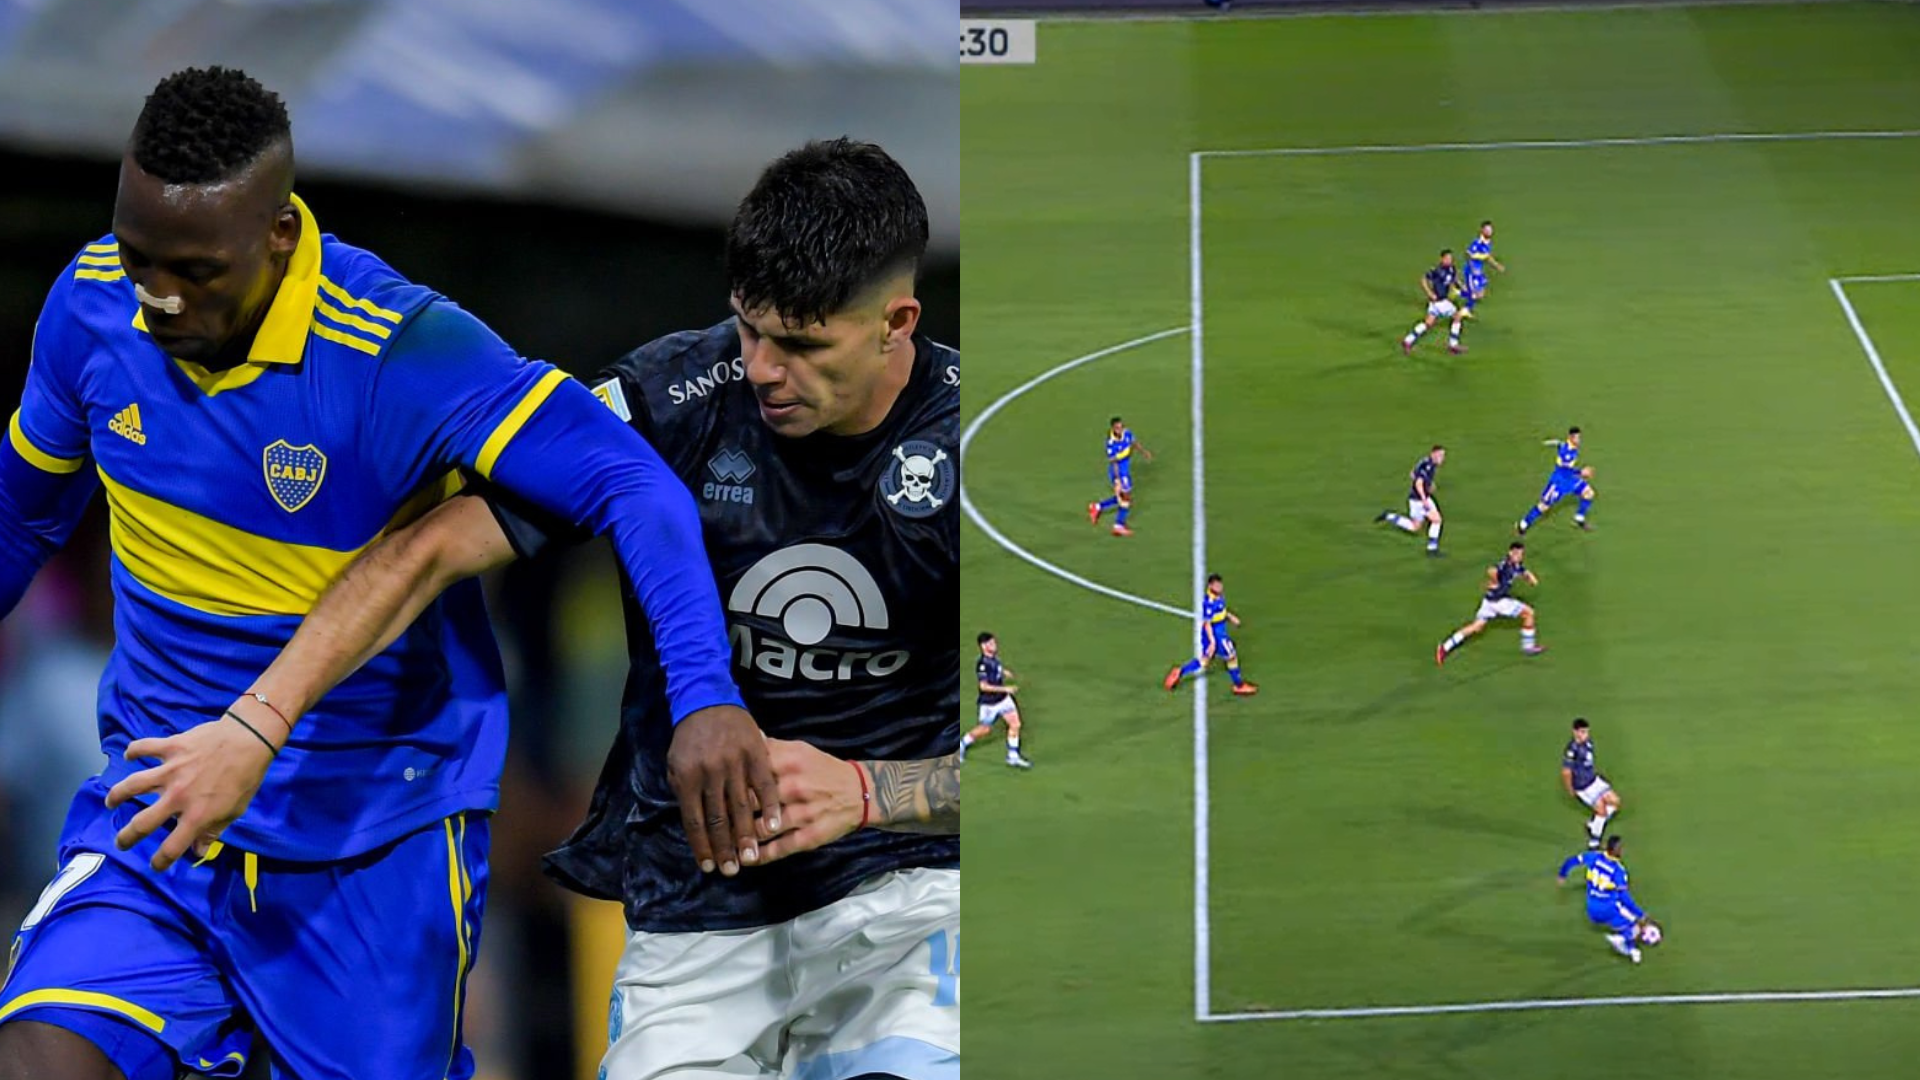 Gran asistencia de Luis Advíncula para gol de Darío Benedetto en  Boca Juniors vs Belgrano de Córdoba 